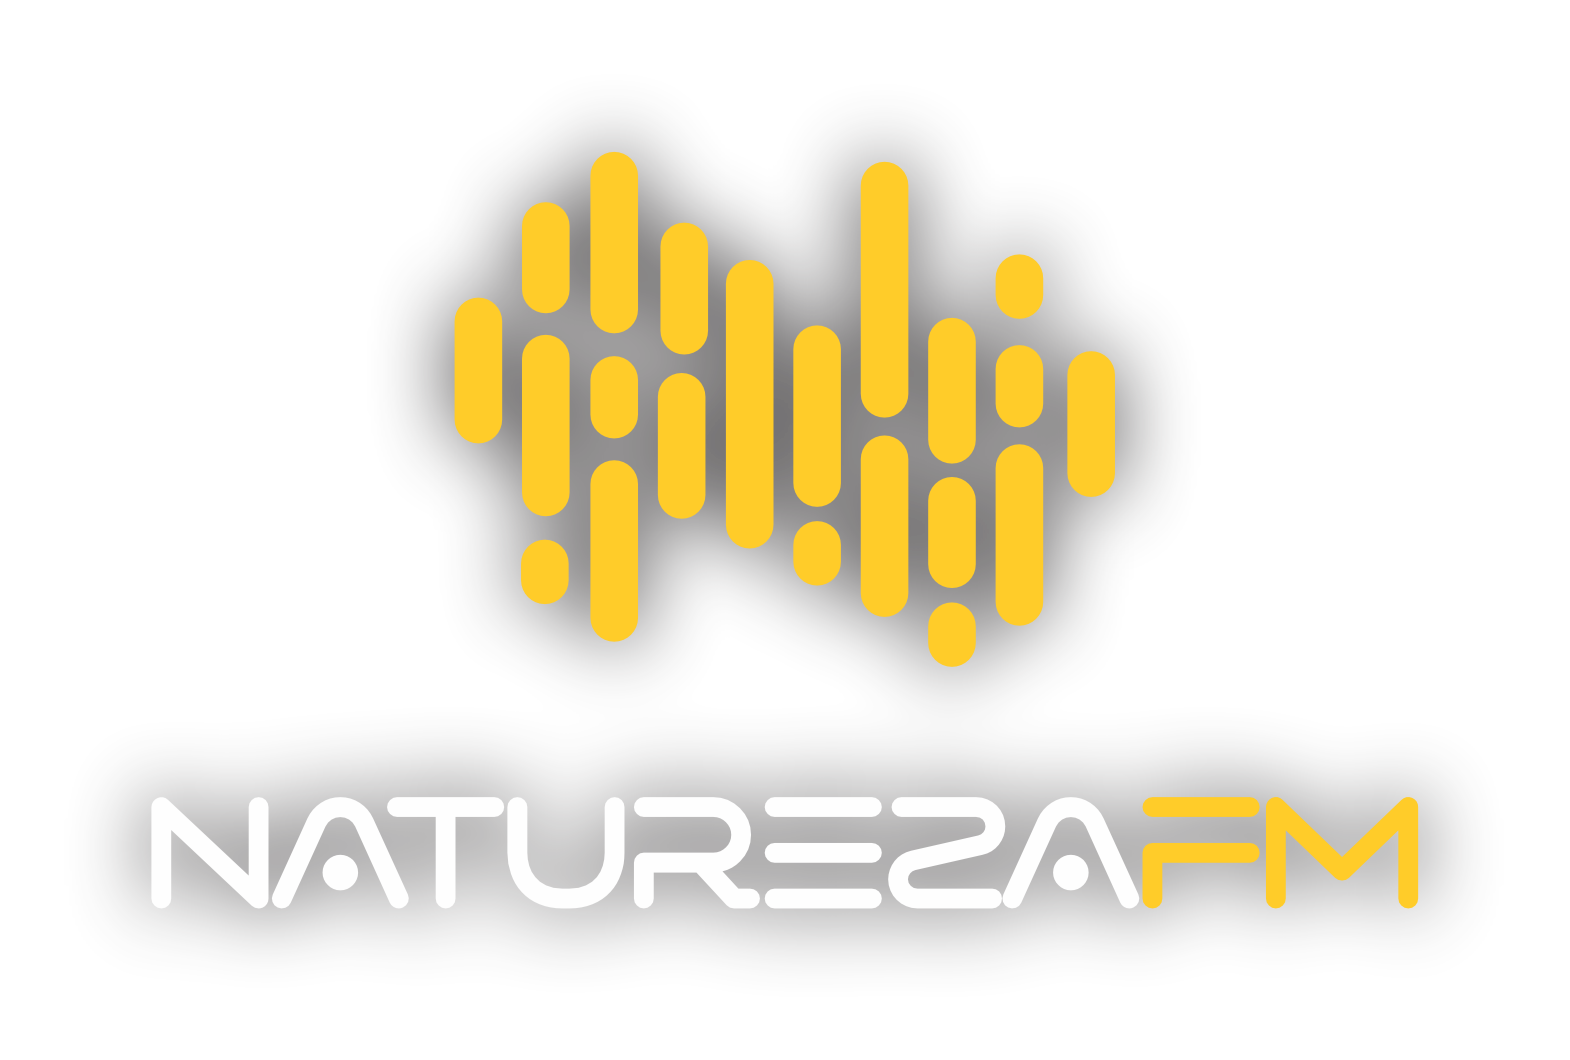 Rádio Natureza FM 98,3